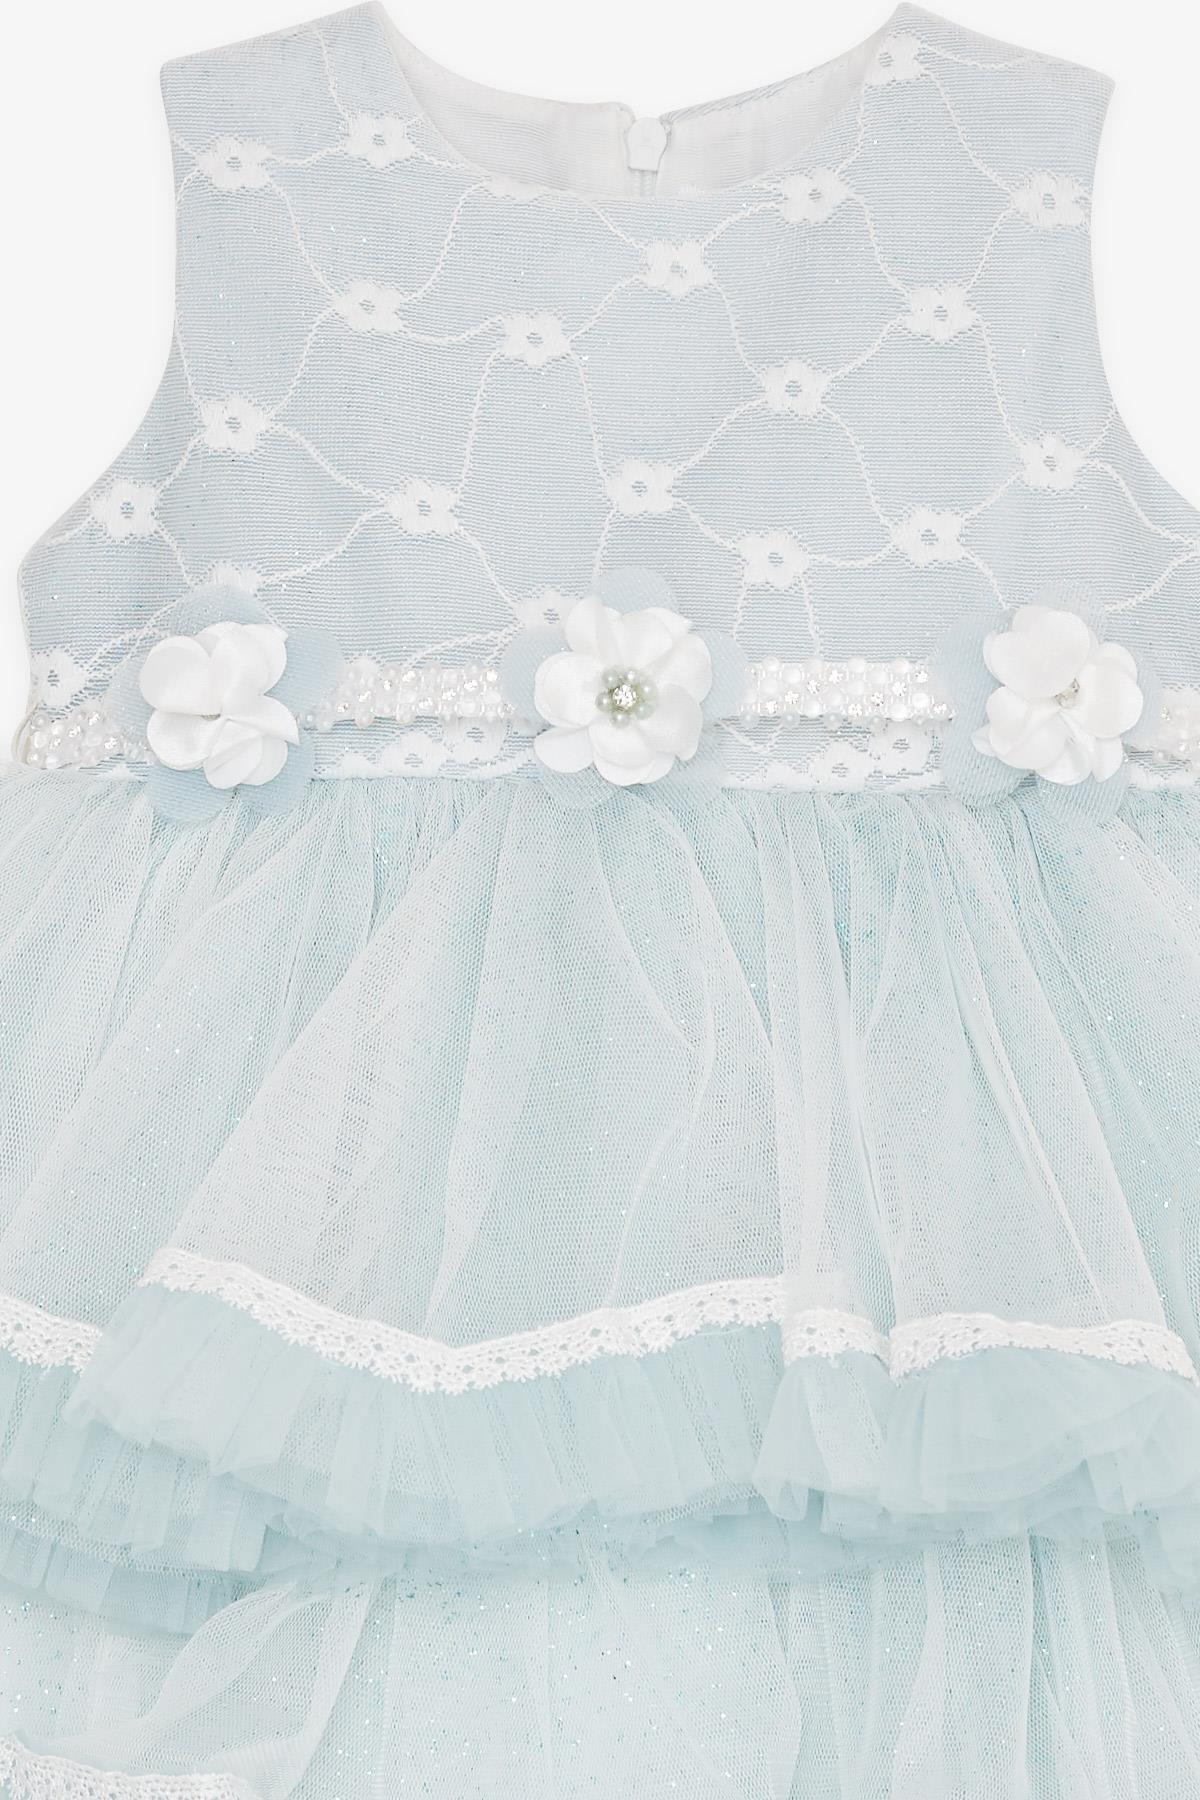 Kız Bebek Abiye Elbise Tüllü Güpürlü Çiçek Aksesuarlı Açık Mavi 6 Ay-2 Yaş  - Şirin Yazlık Elbise Modeller | Breeze